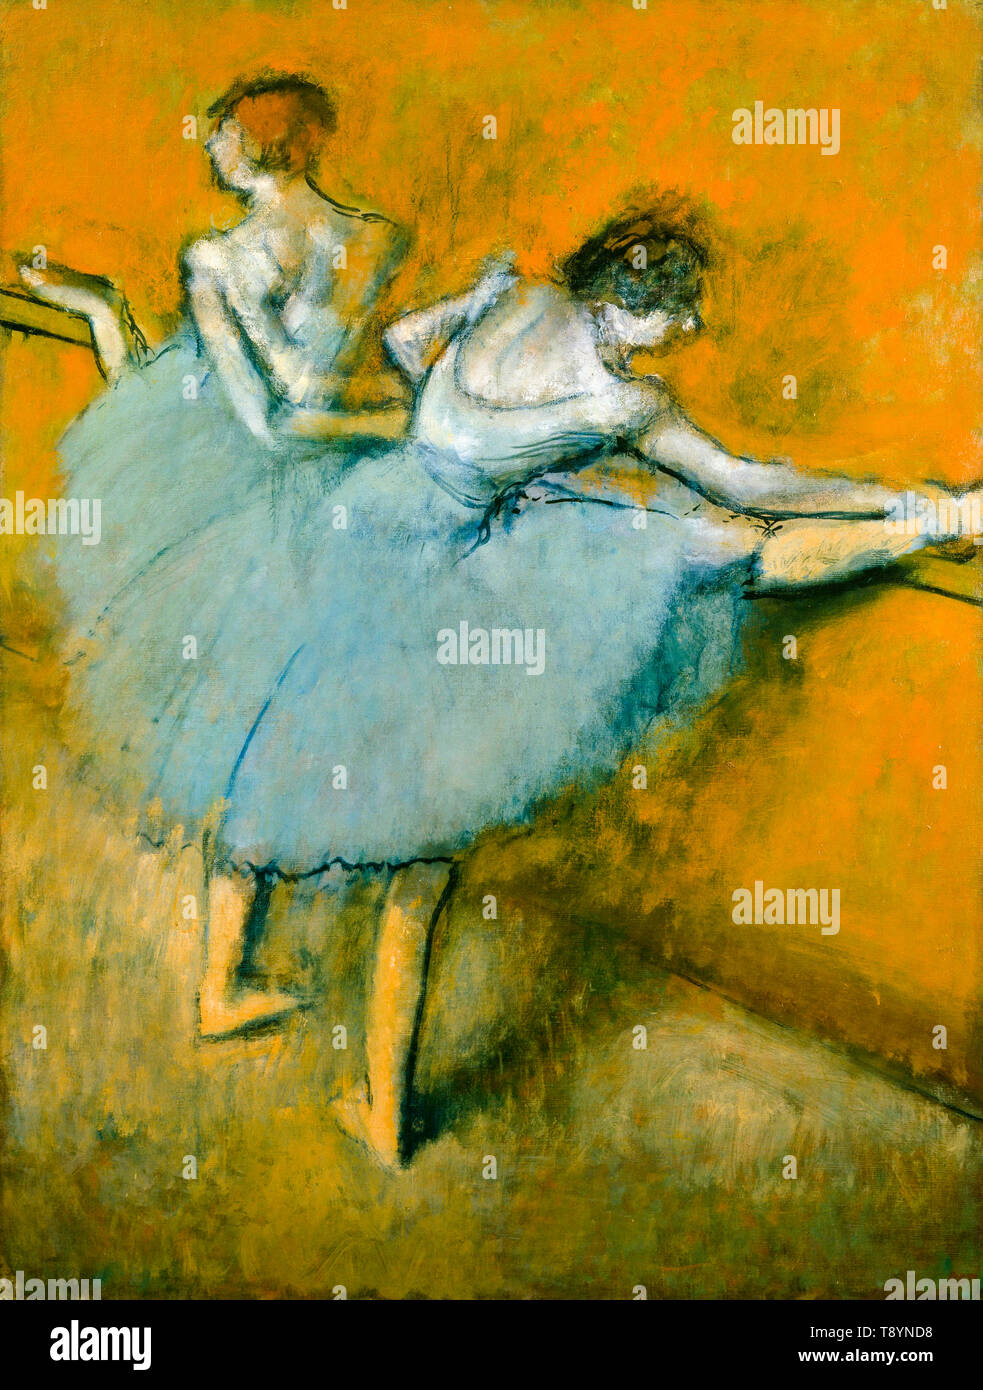 Balletto, Edgar Degas, ballerini al barre, pittura impressionista, circa 1900 Foto Stock